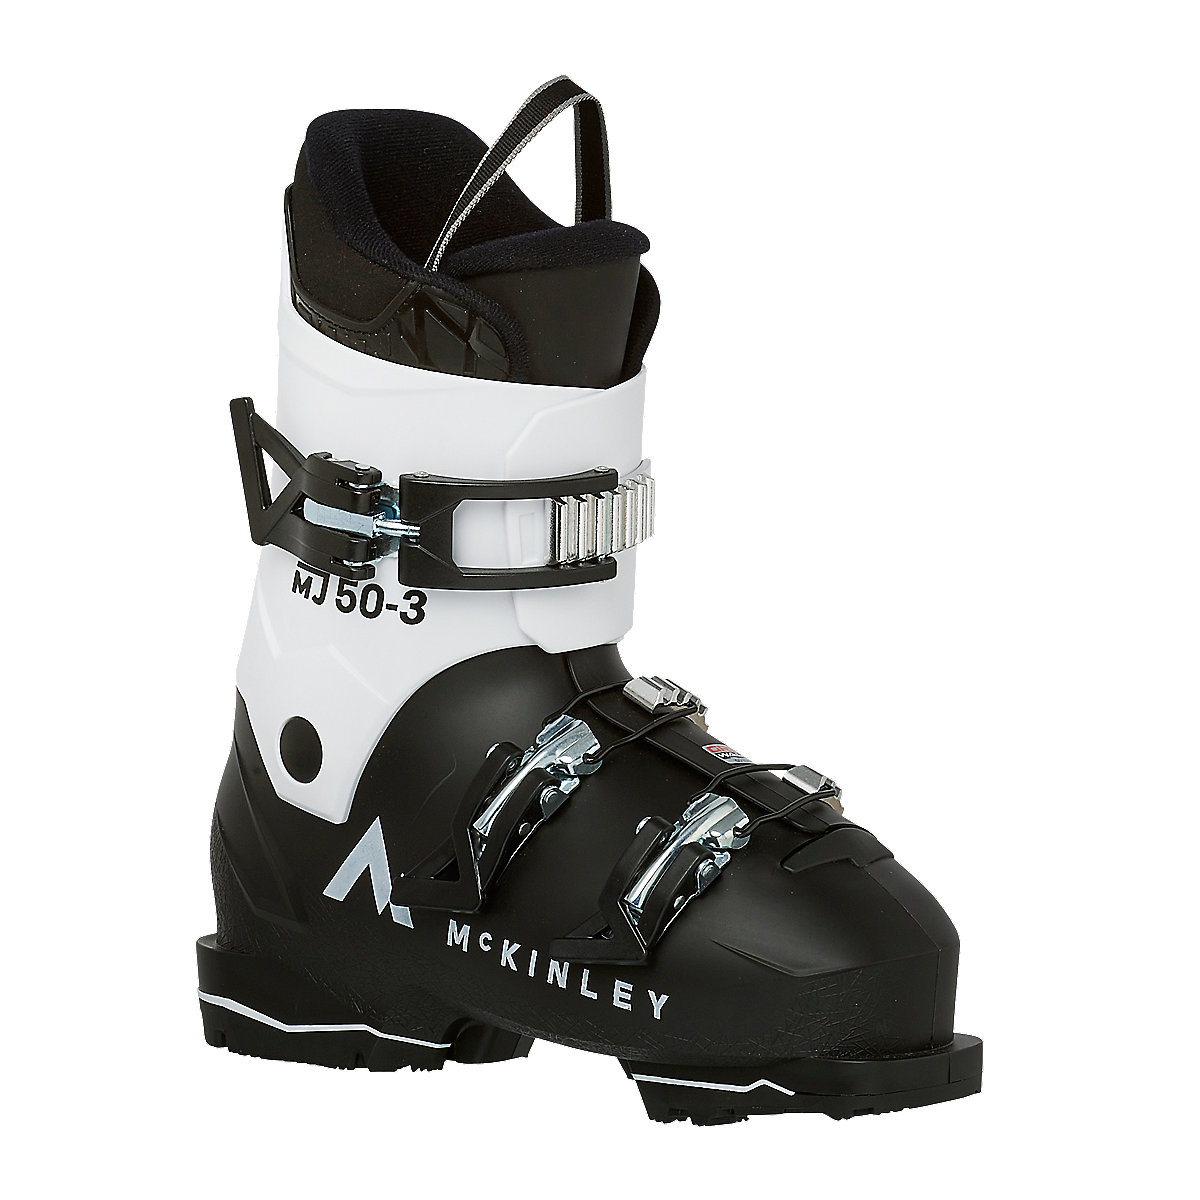 chaussures de ski enfant mj50-3 gw